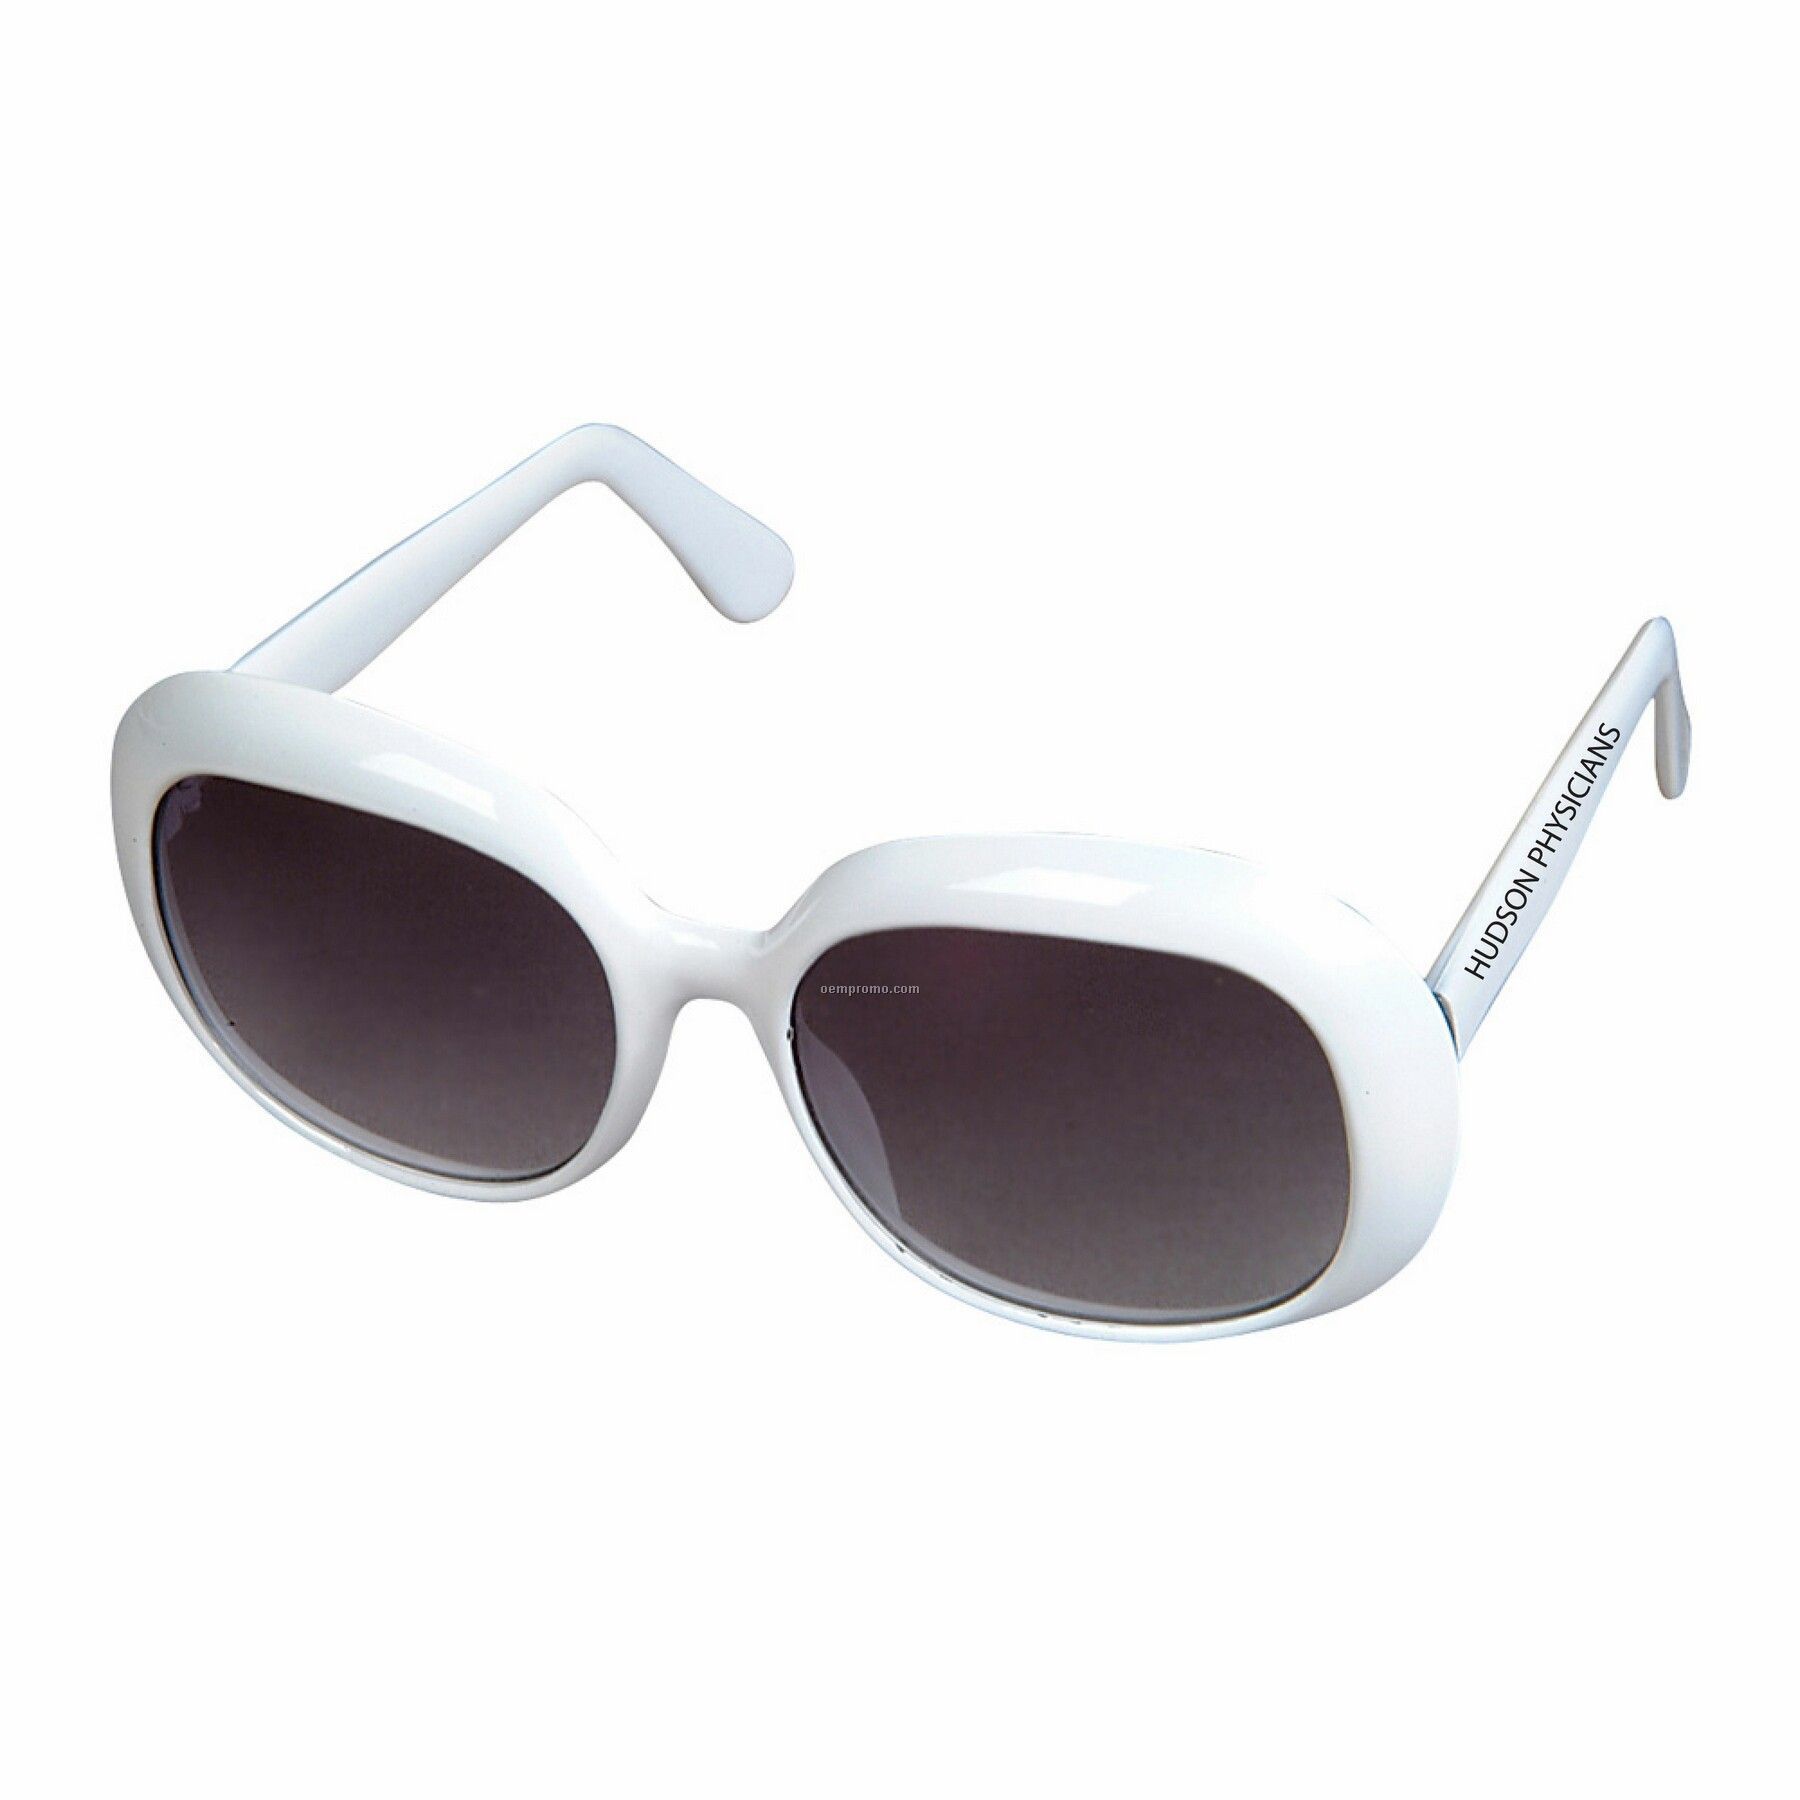 White High Fashion Sunglasses